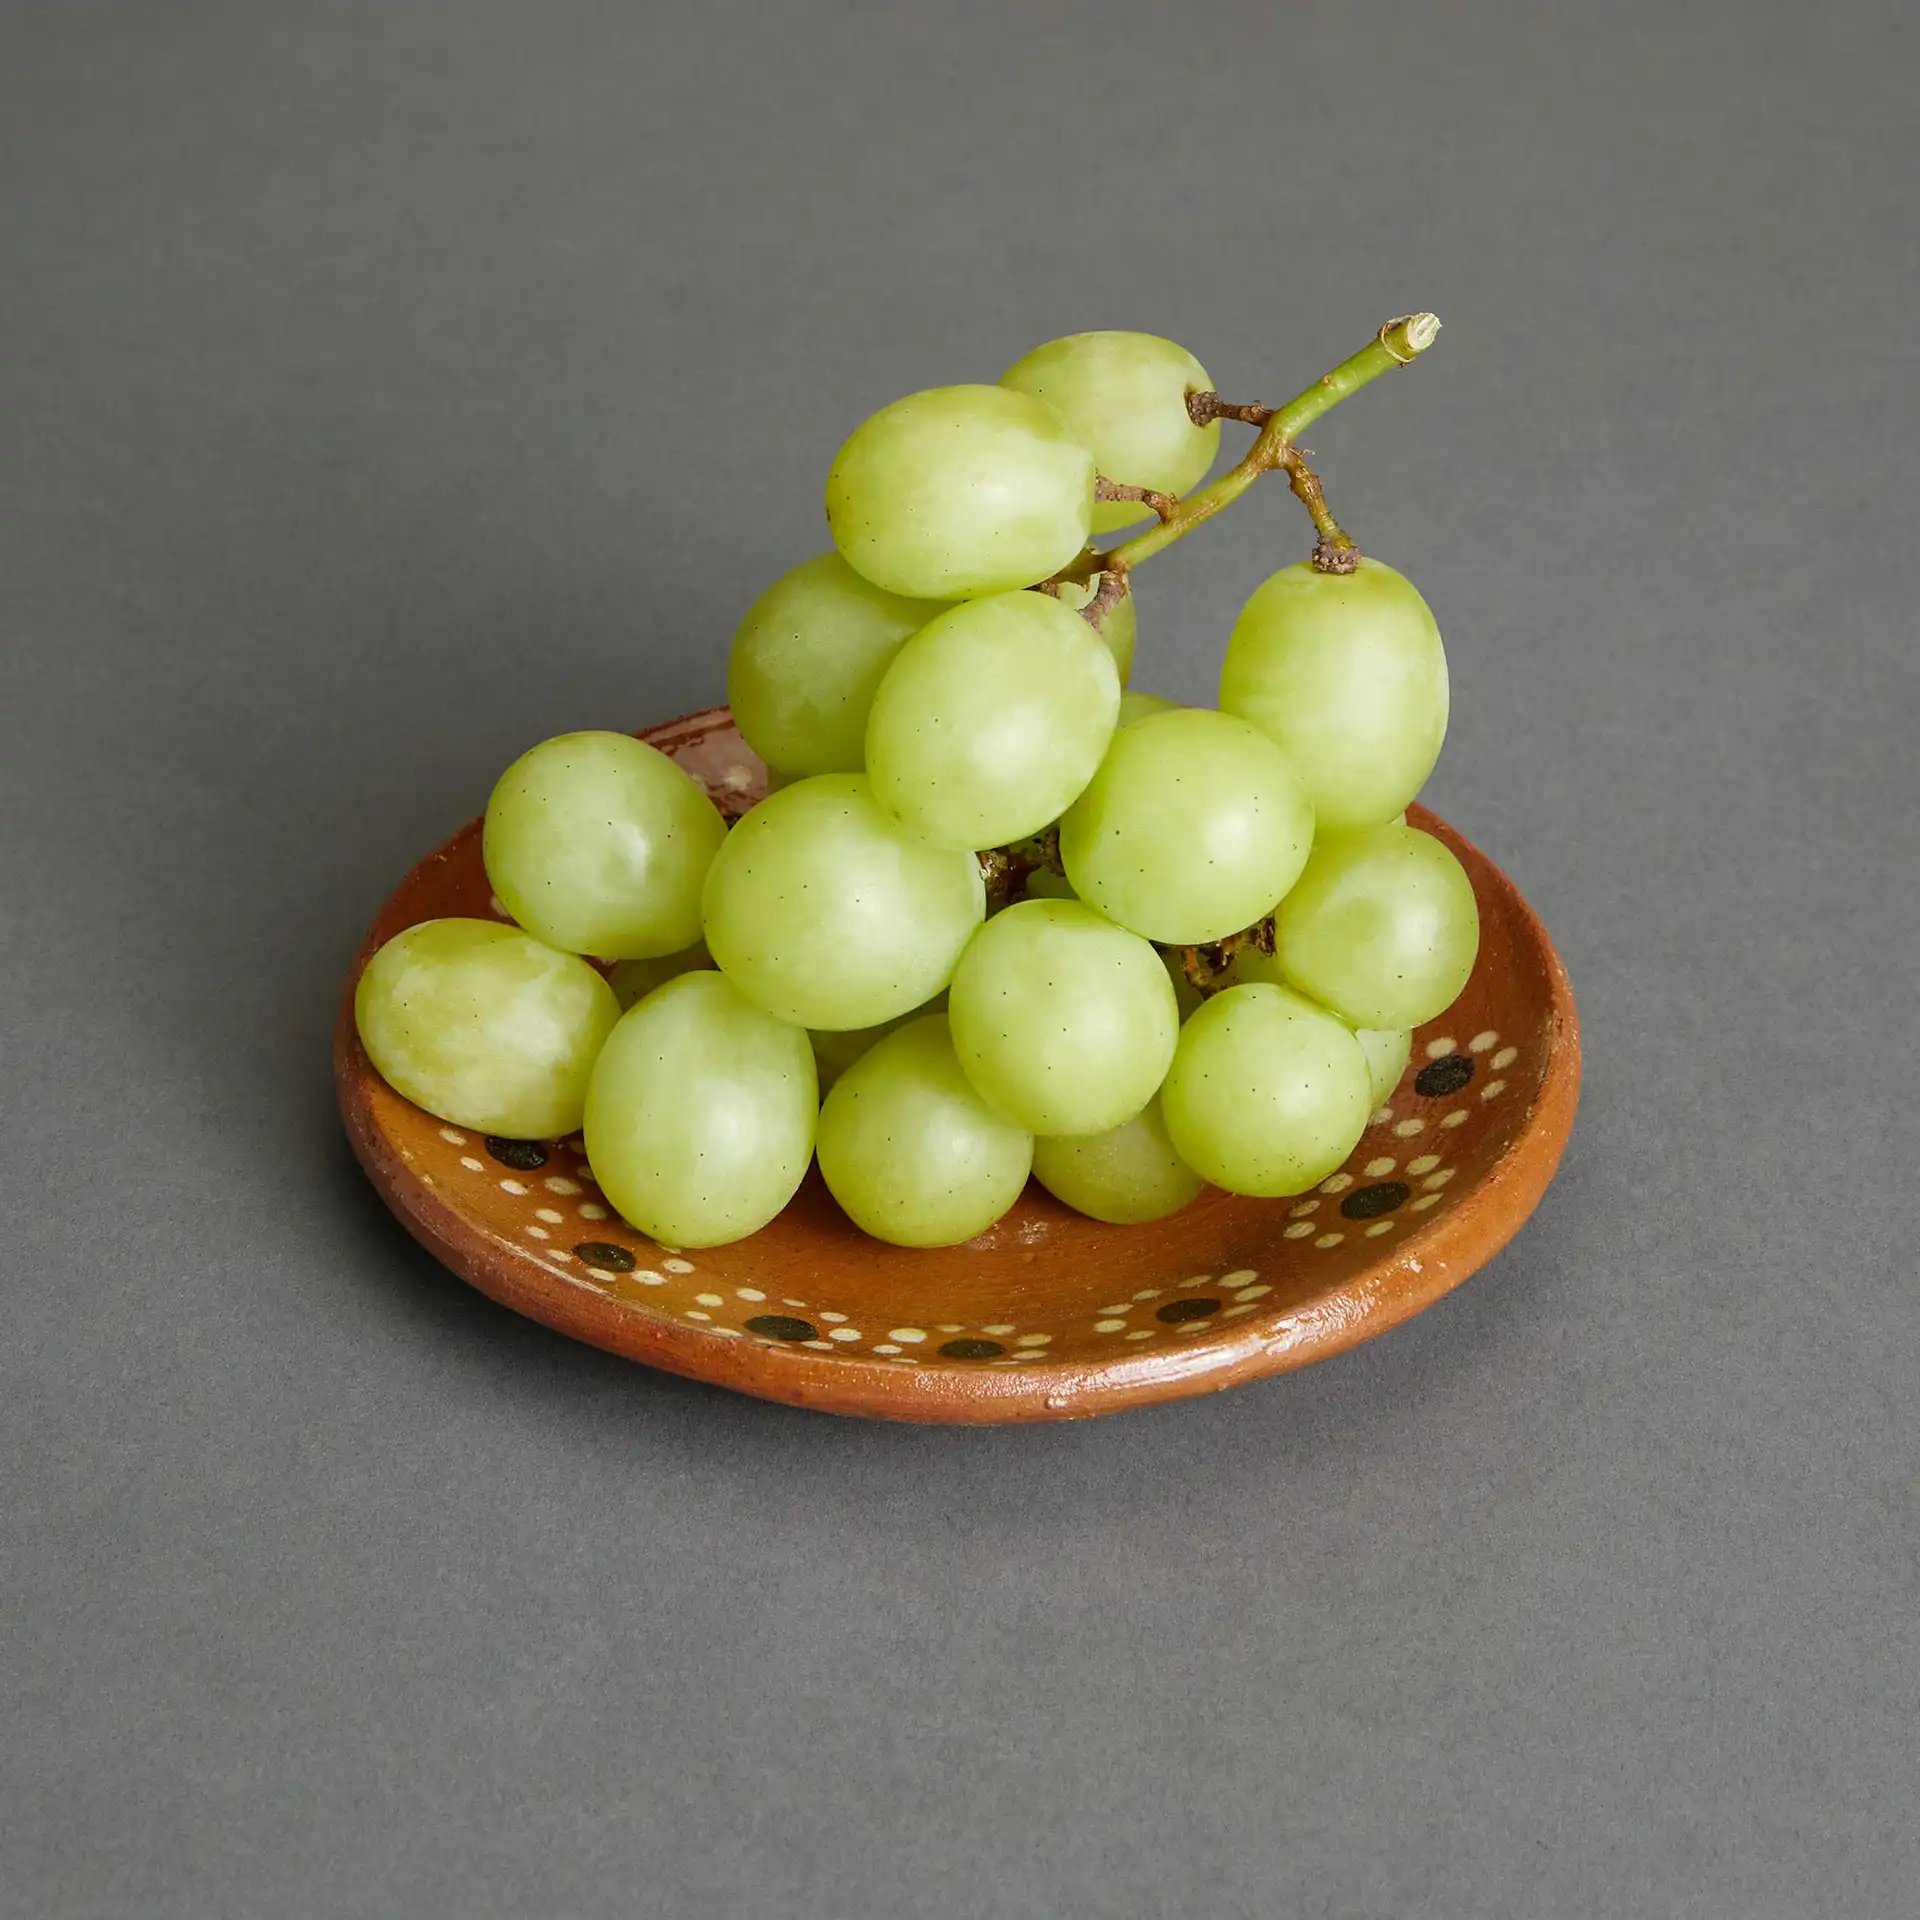 A ceramic bowl of grapes